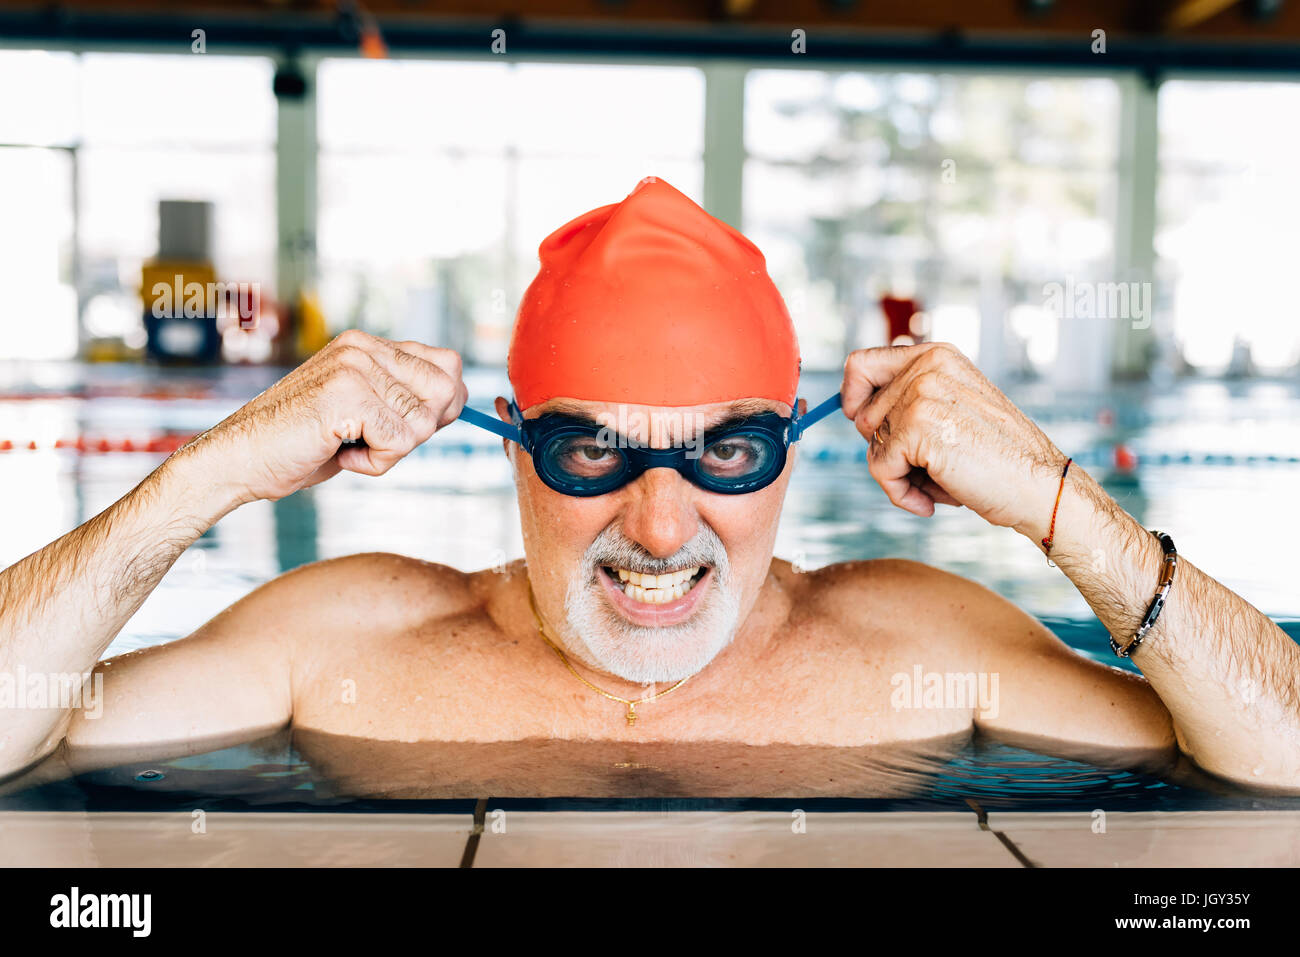 Indossare gli occhiali di protezione in piscina immagini e fotografie stock  ad alta risoluzione - Alamy